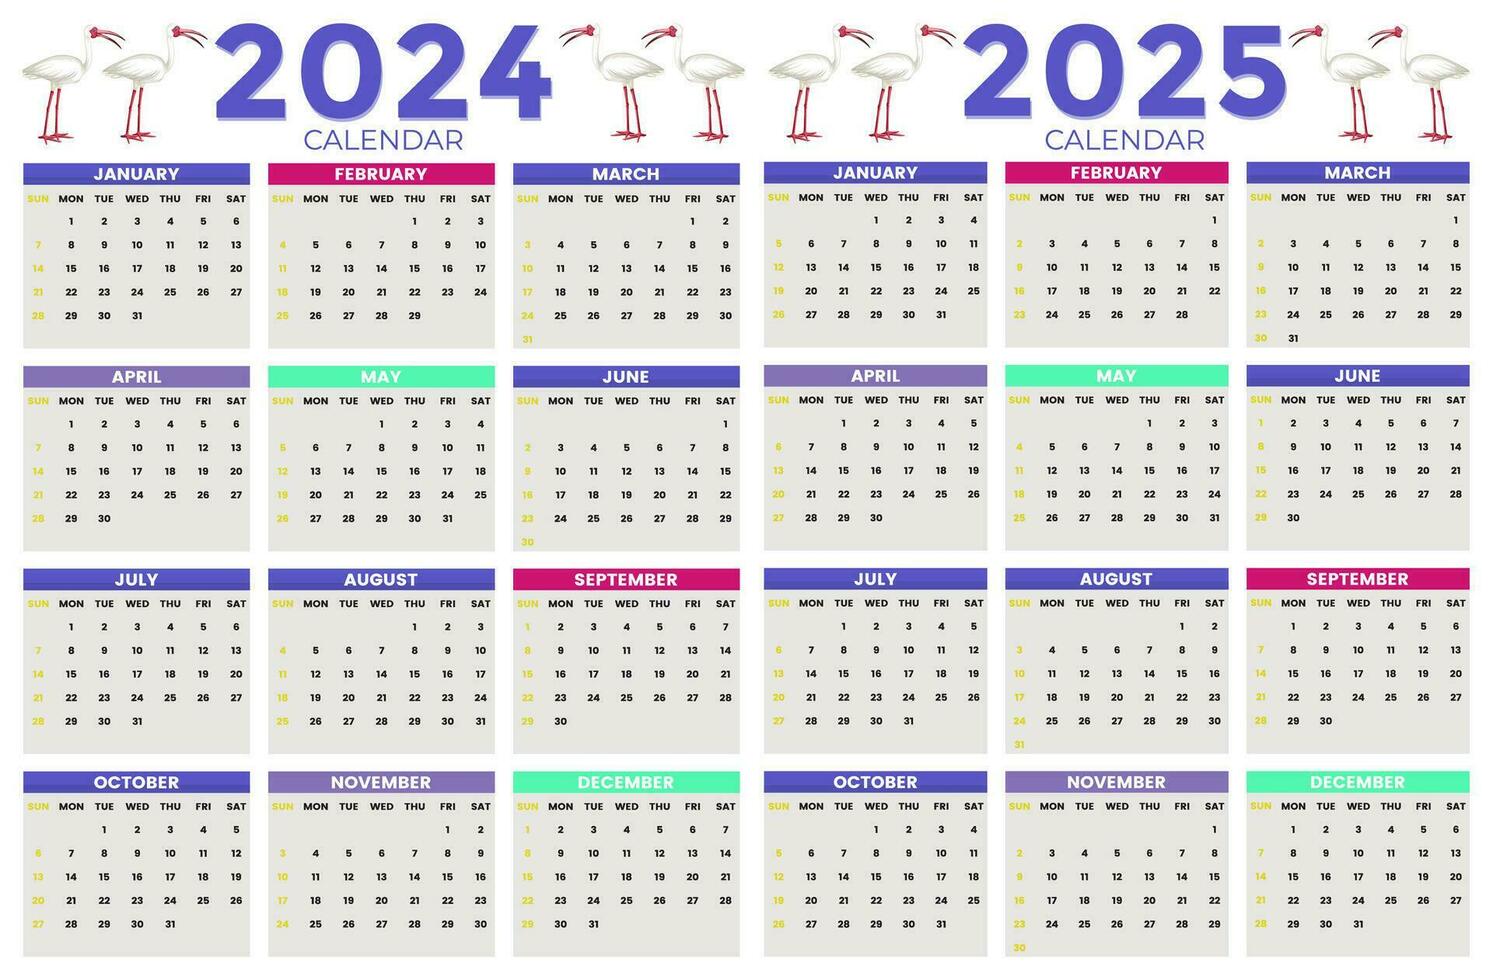 2024, 2025 Kalender Design Vorlage zum glücklich Neu Jahr vektor